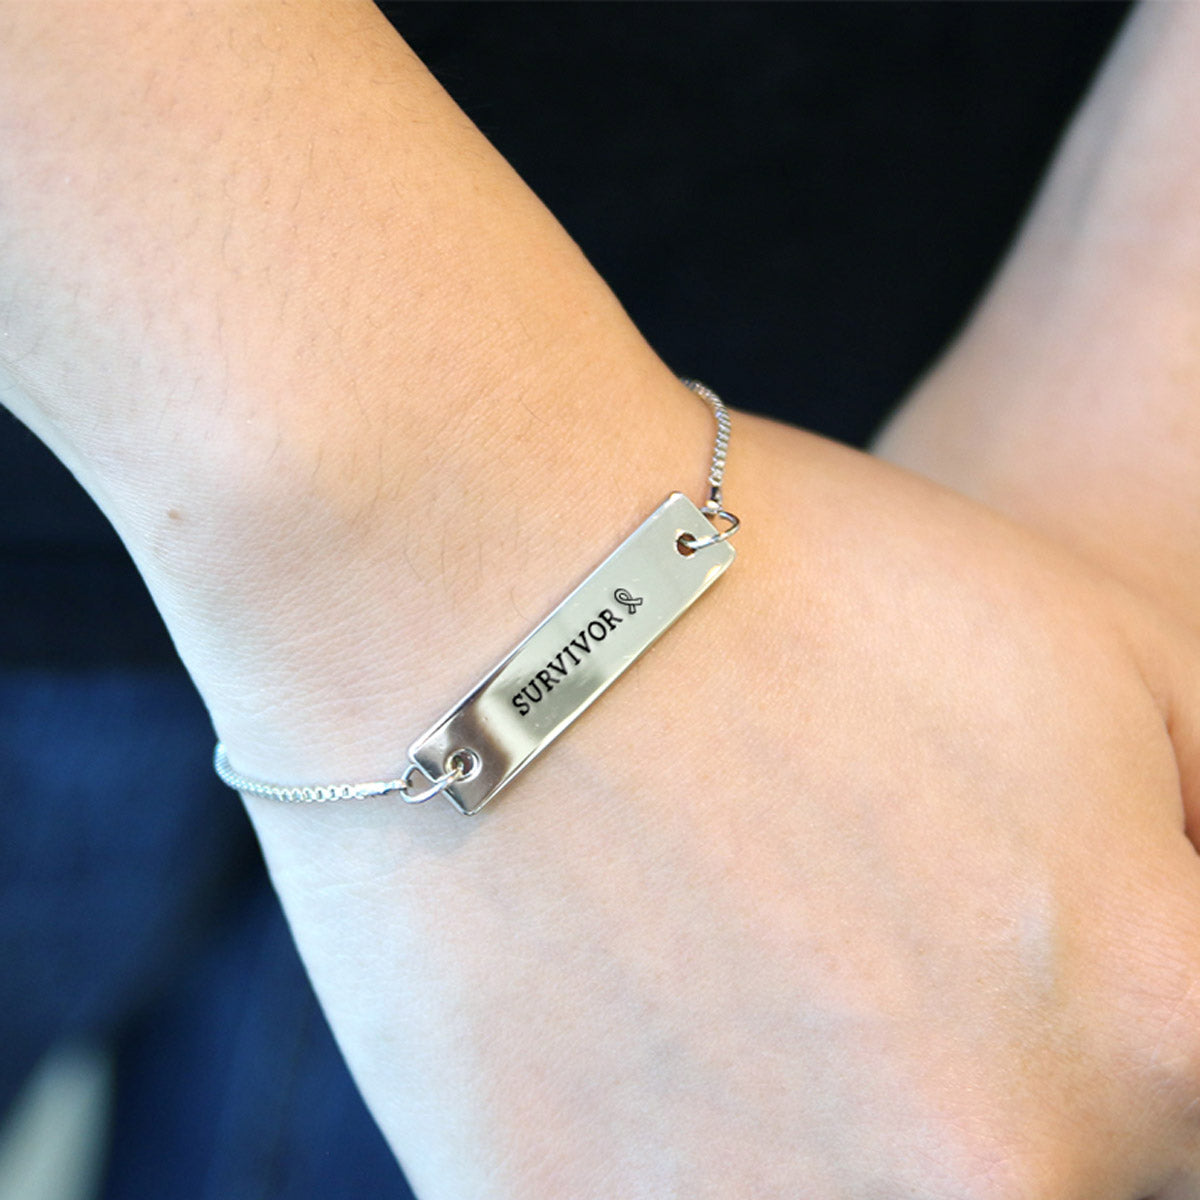 Silver Survivor Ribbon Adjustable Bar Bracelet